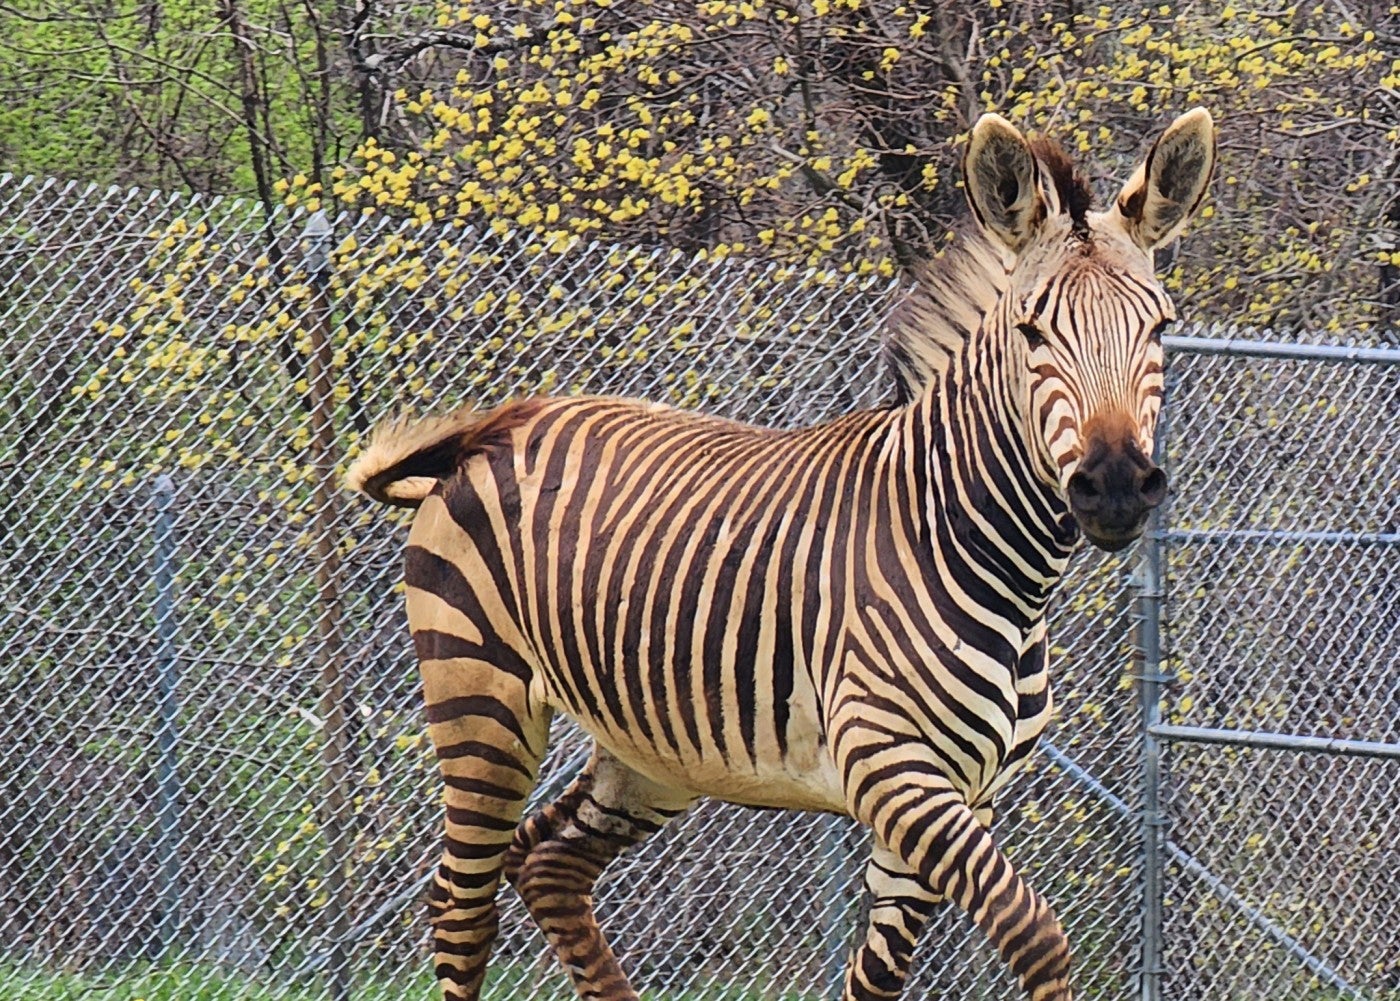 Zebra walks by a fence